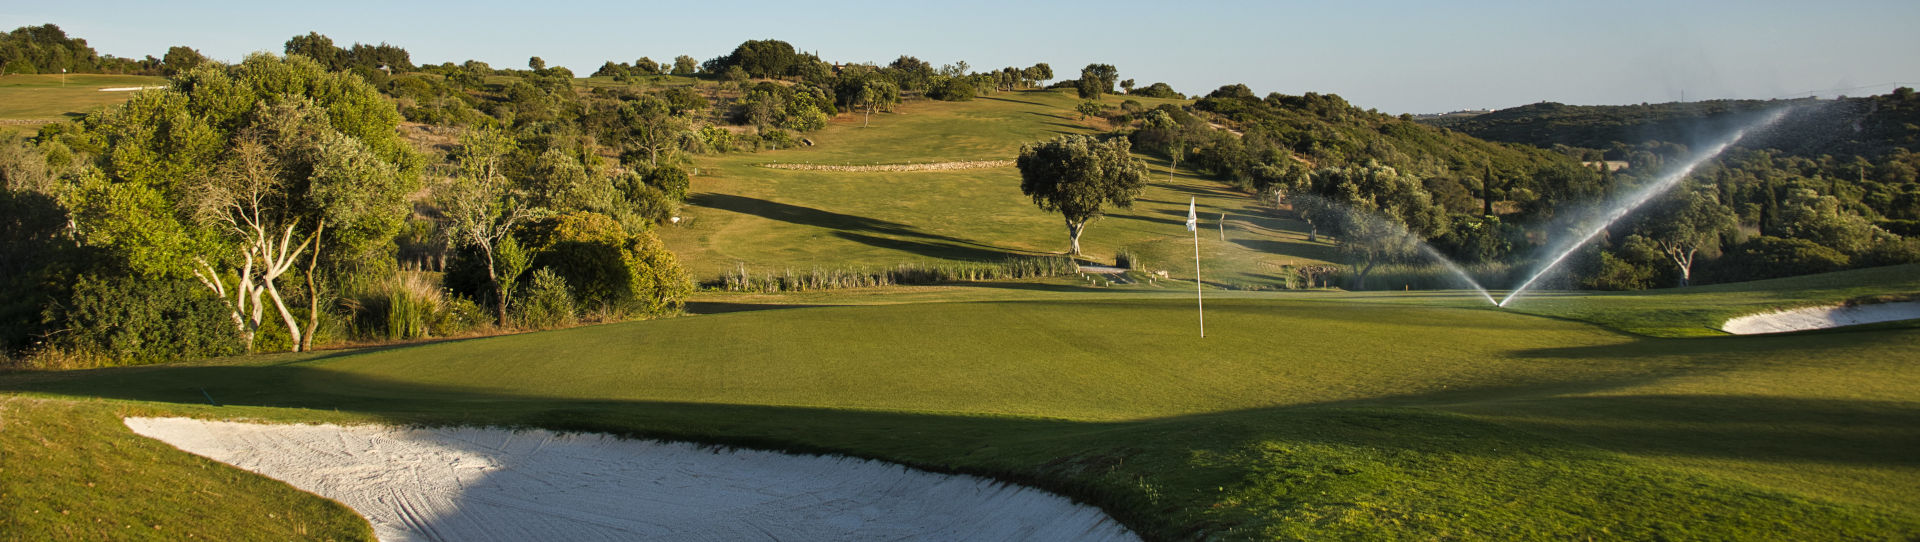 Portugal golf courses - Espiche Golf Course - Photo 3